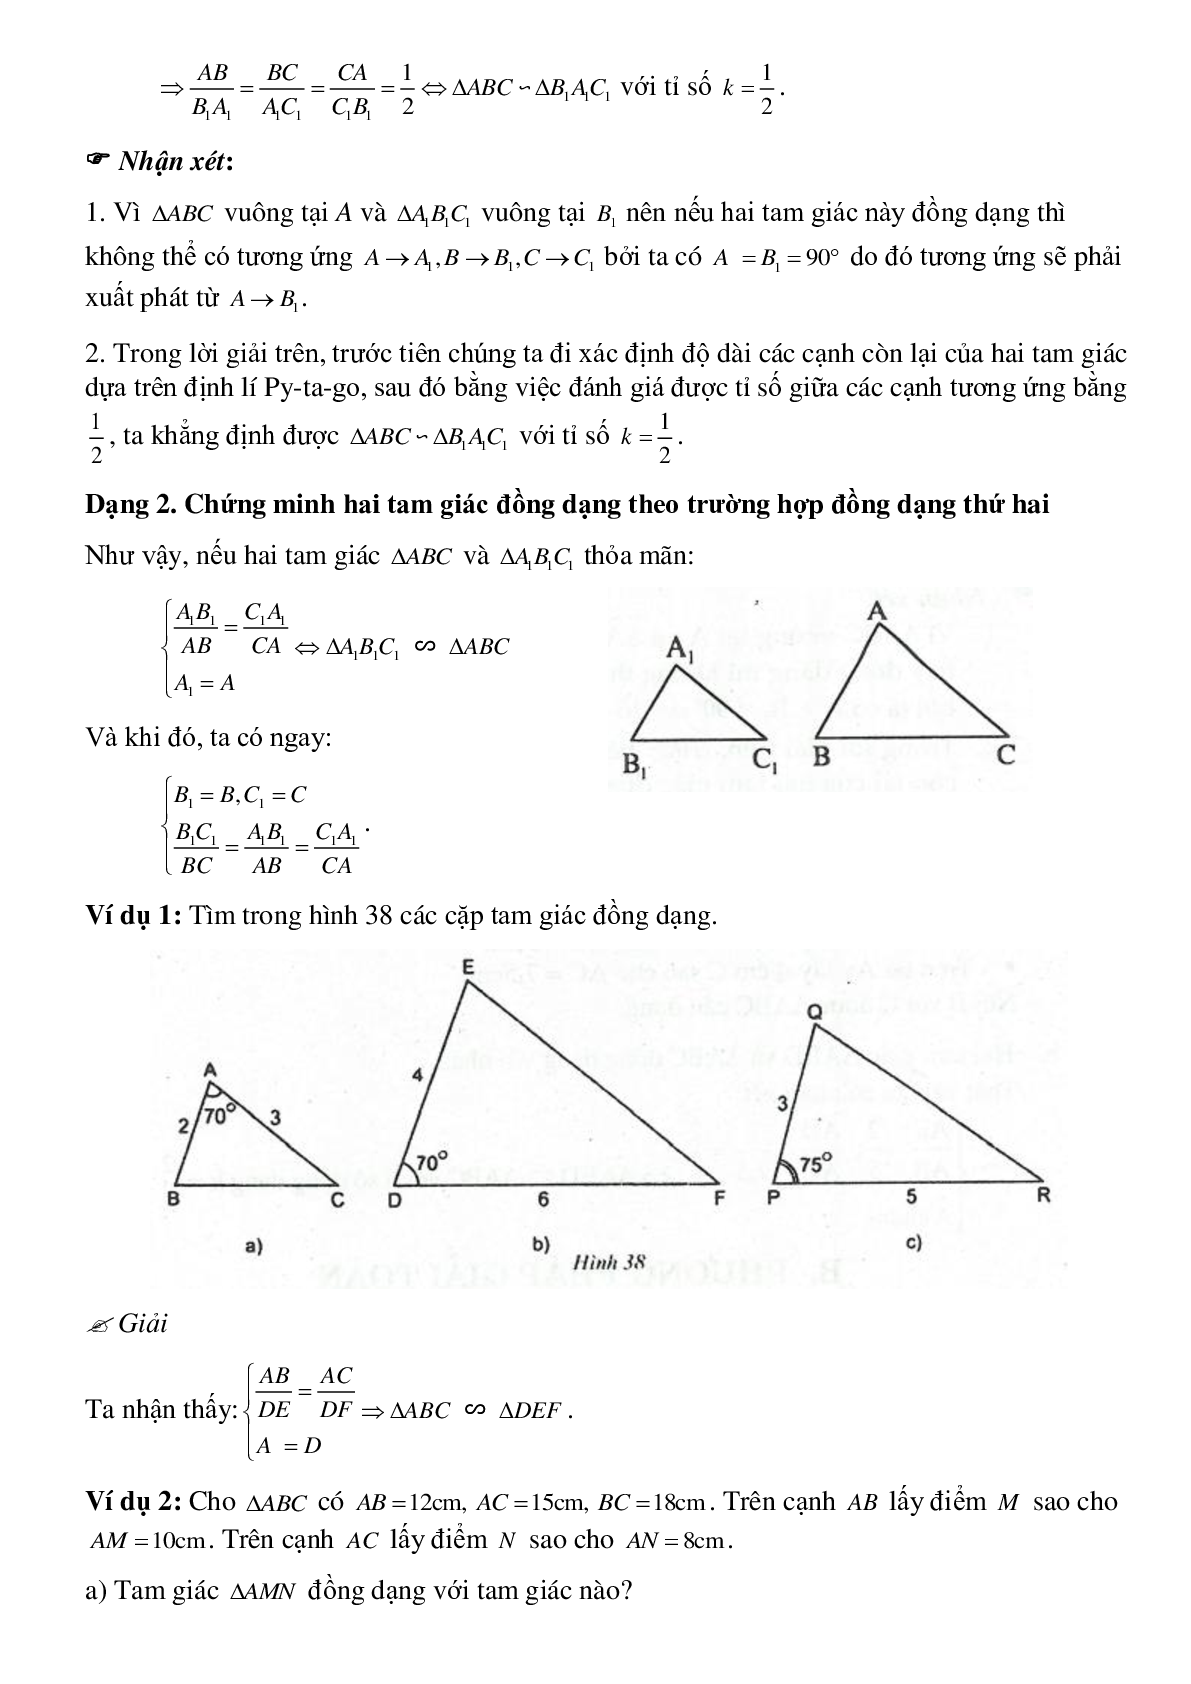 Phương pháp giải chi tiết, bài tập về Chứng minh hai tam giác đồng dạng chọn lọc (trang 3)